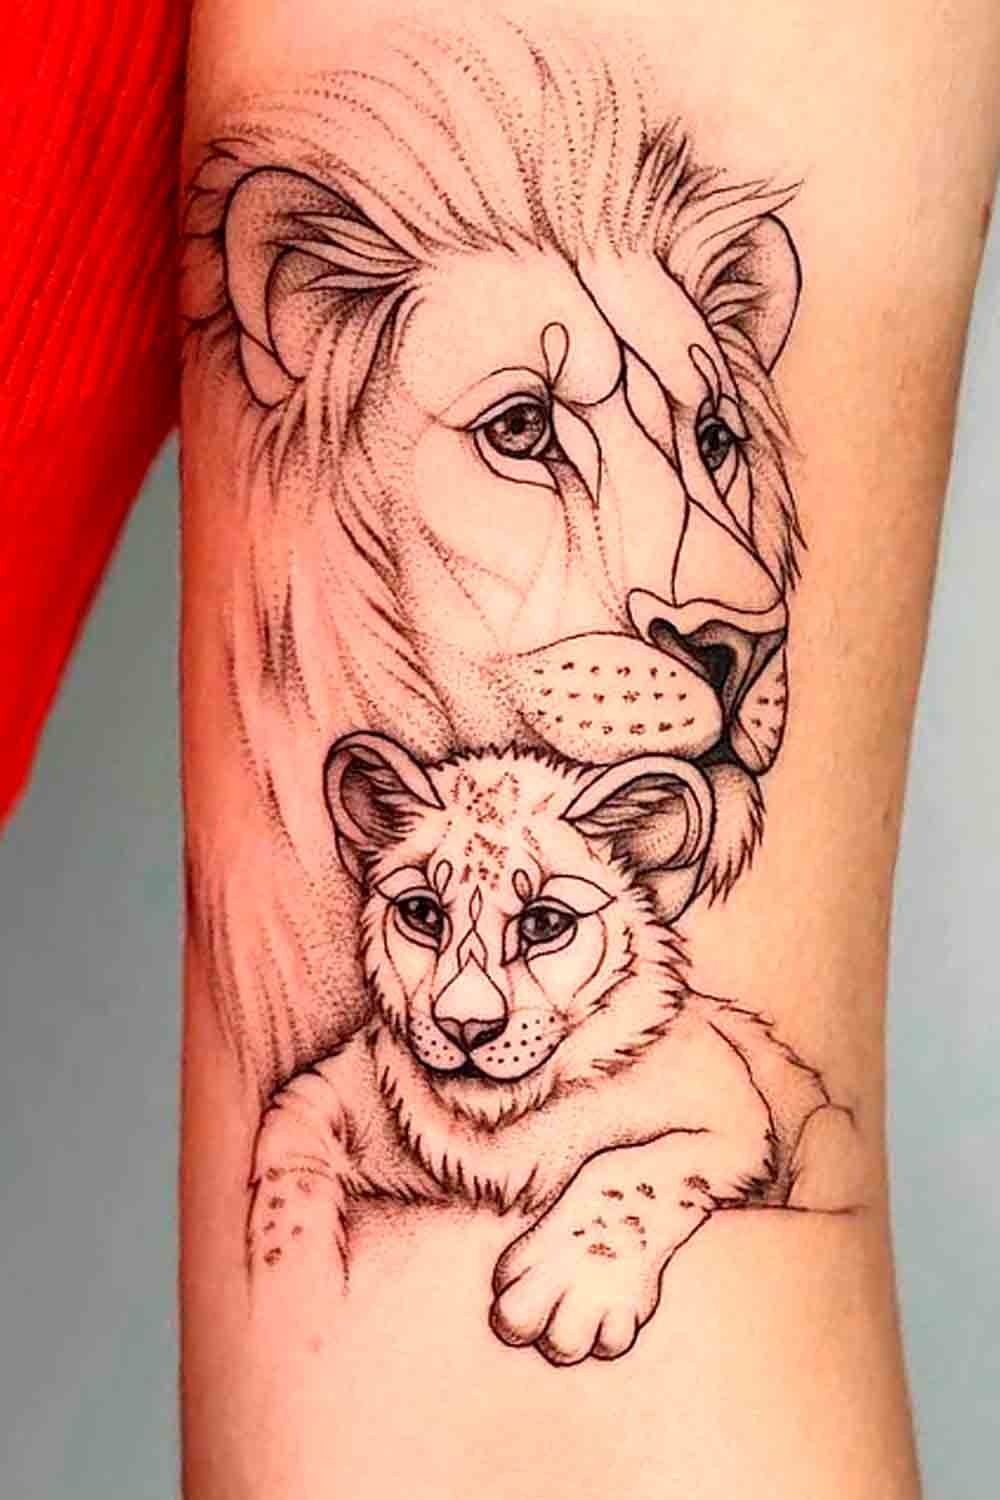 tatuaje brazo de mujer 22